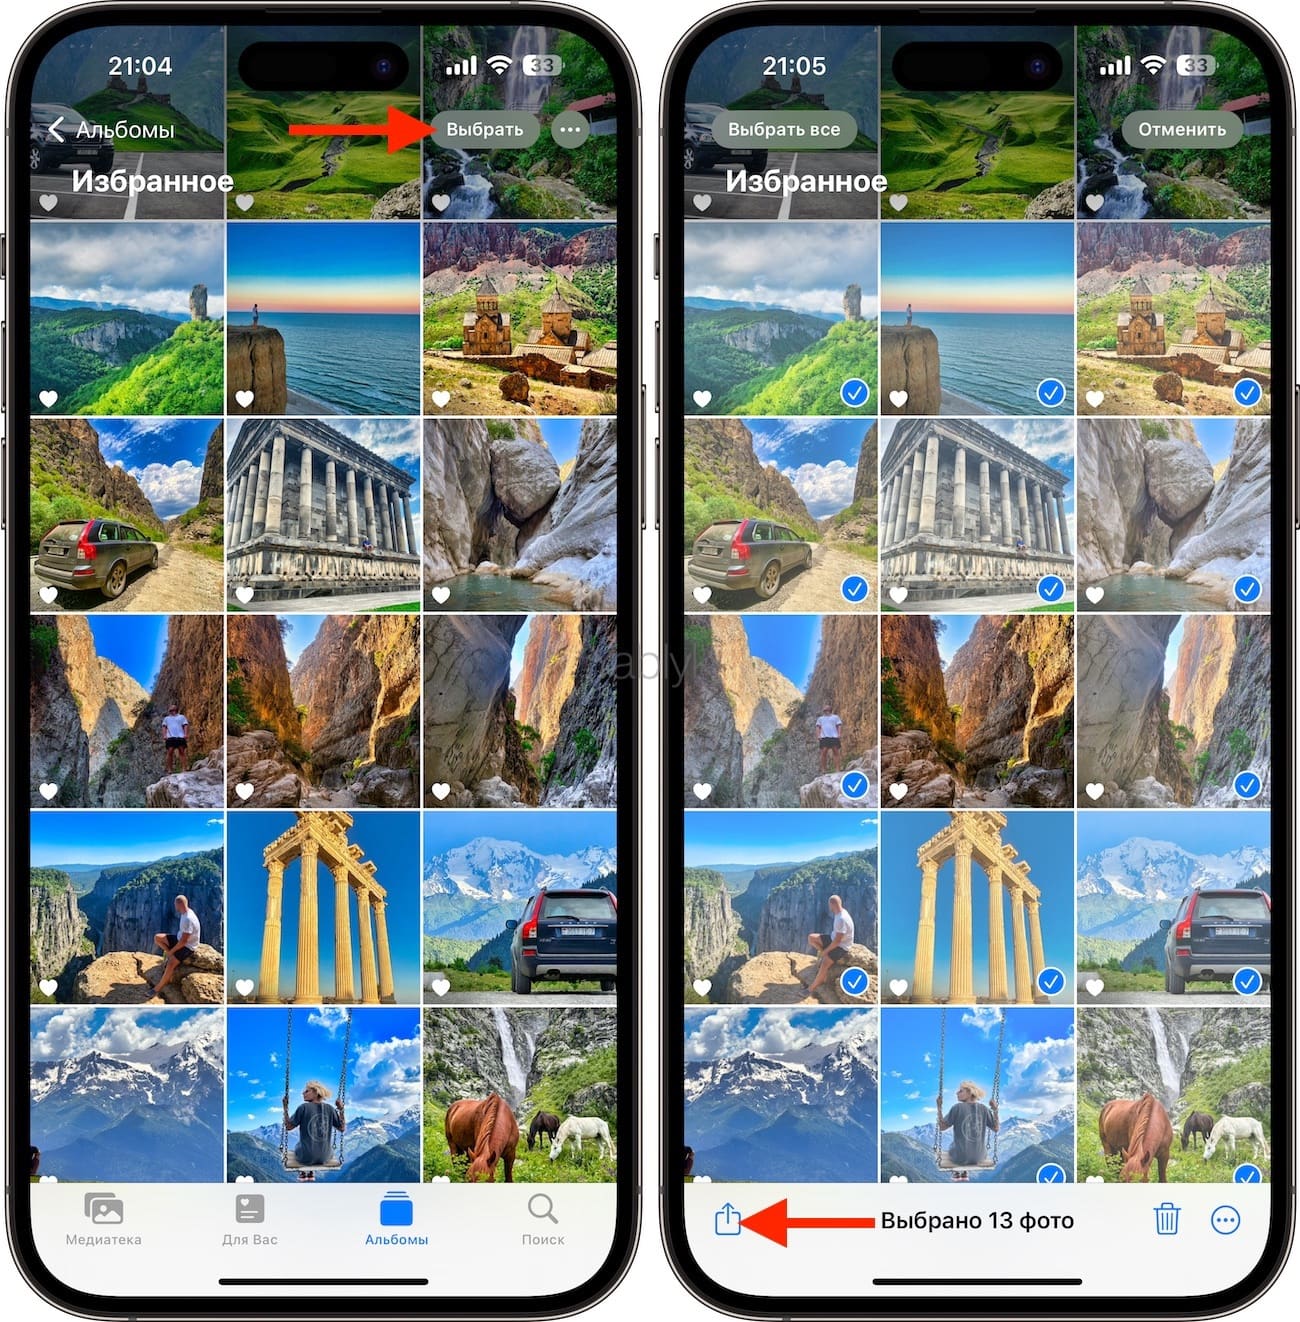 Как загрузить фото с Айфона в Интернет и получить ссылку без использования приложений и сервисов